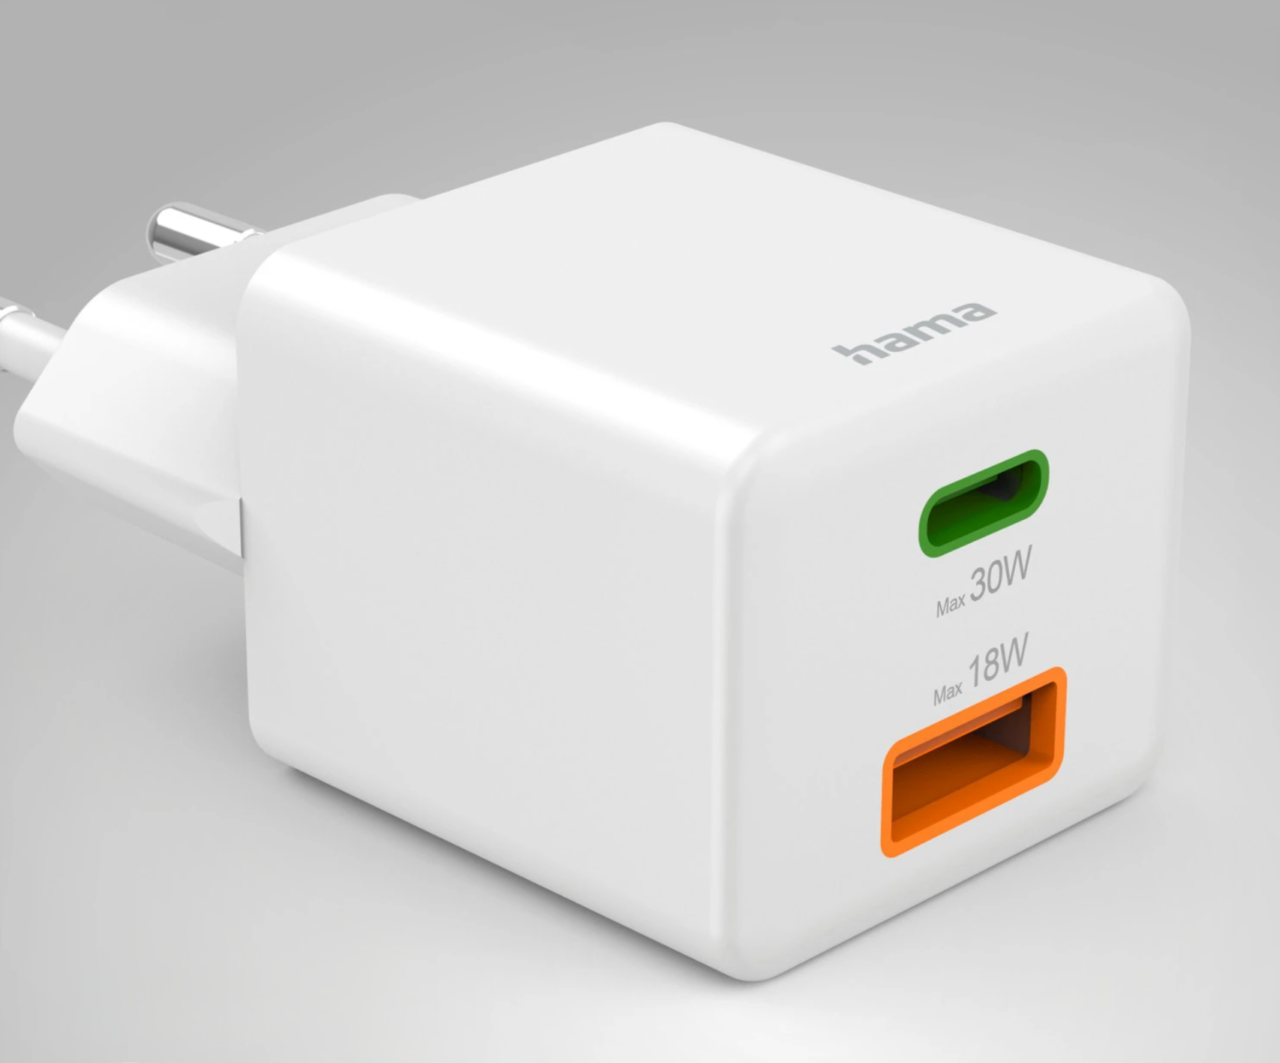 Biała, dwuportowa ładowarka sieciowa marki hama z jednym zielonym portem USB-C oznaczonym jako "Max 30W" i jednym pomarańczowym portem USB-A oznaczonym jako "Max 18W".